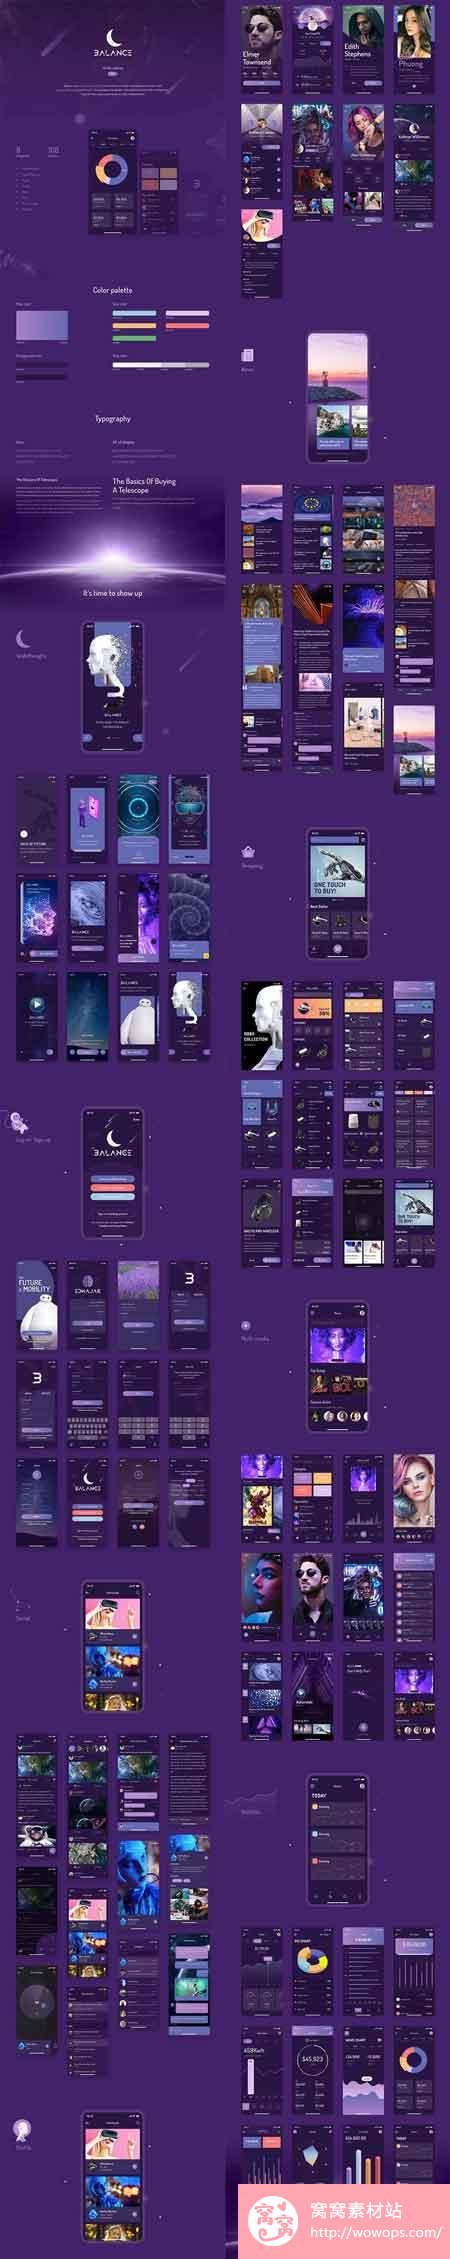 紫色商业欧美风UI手机界面模板1